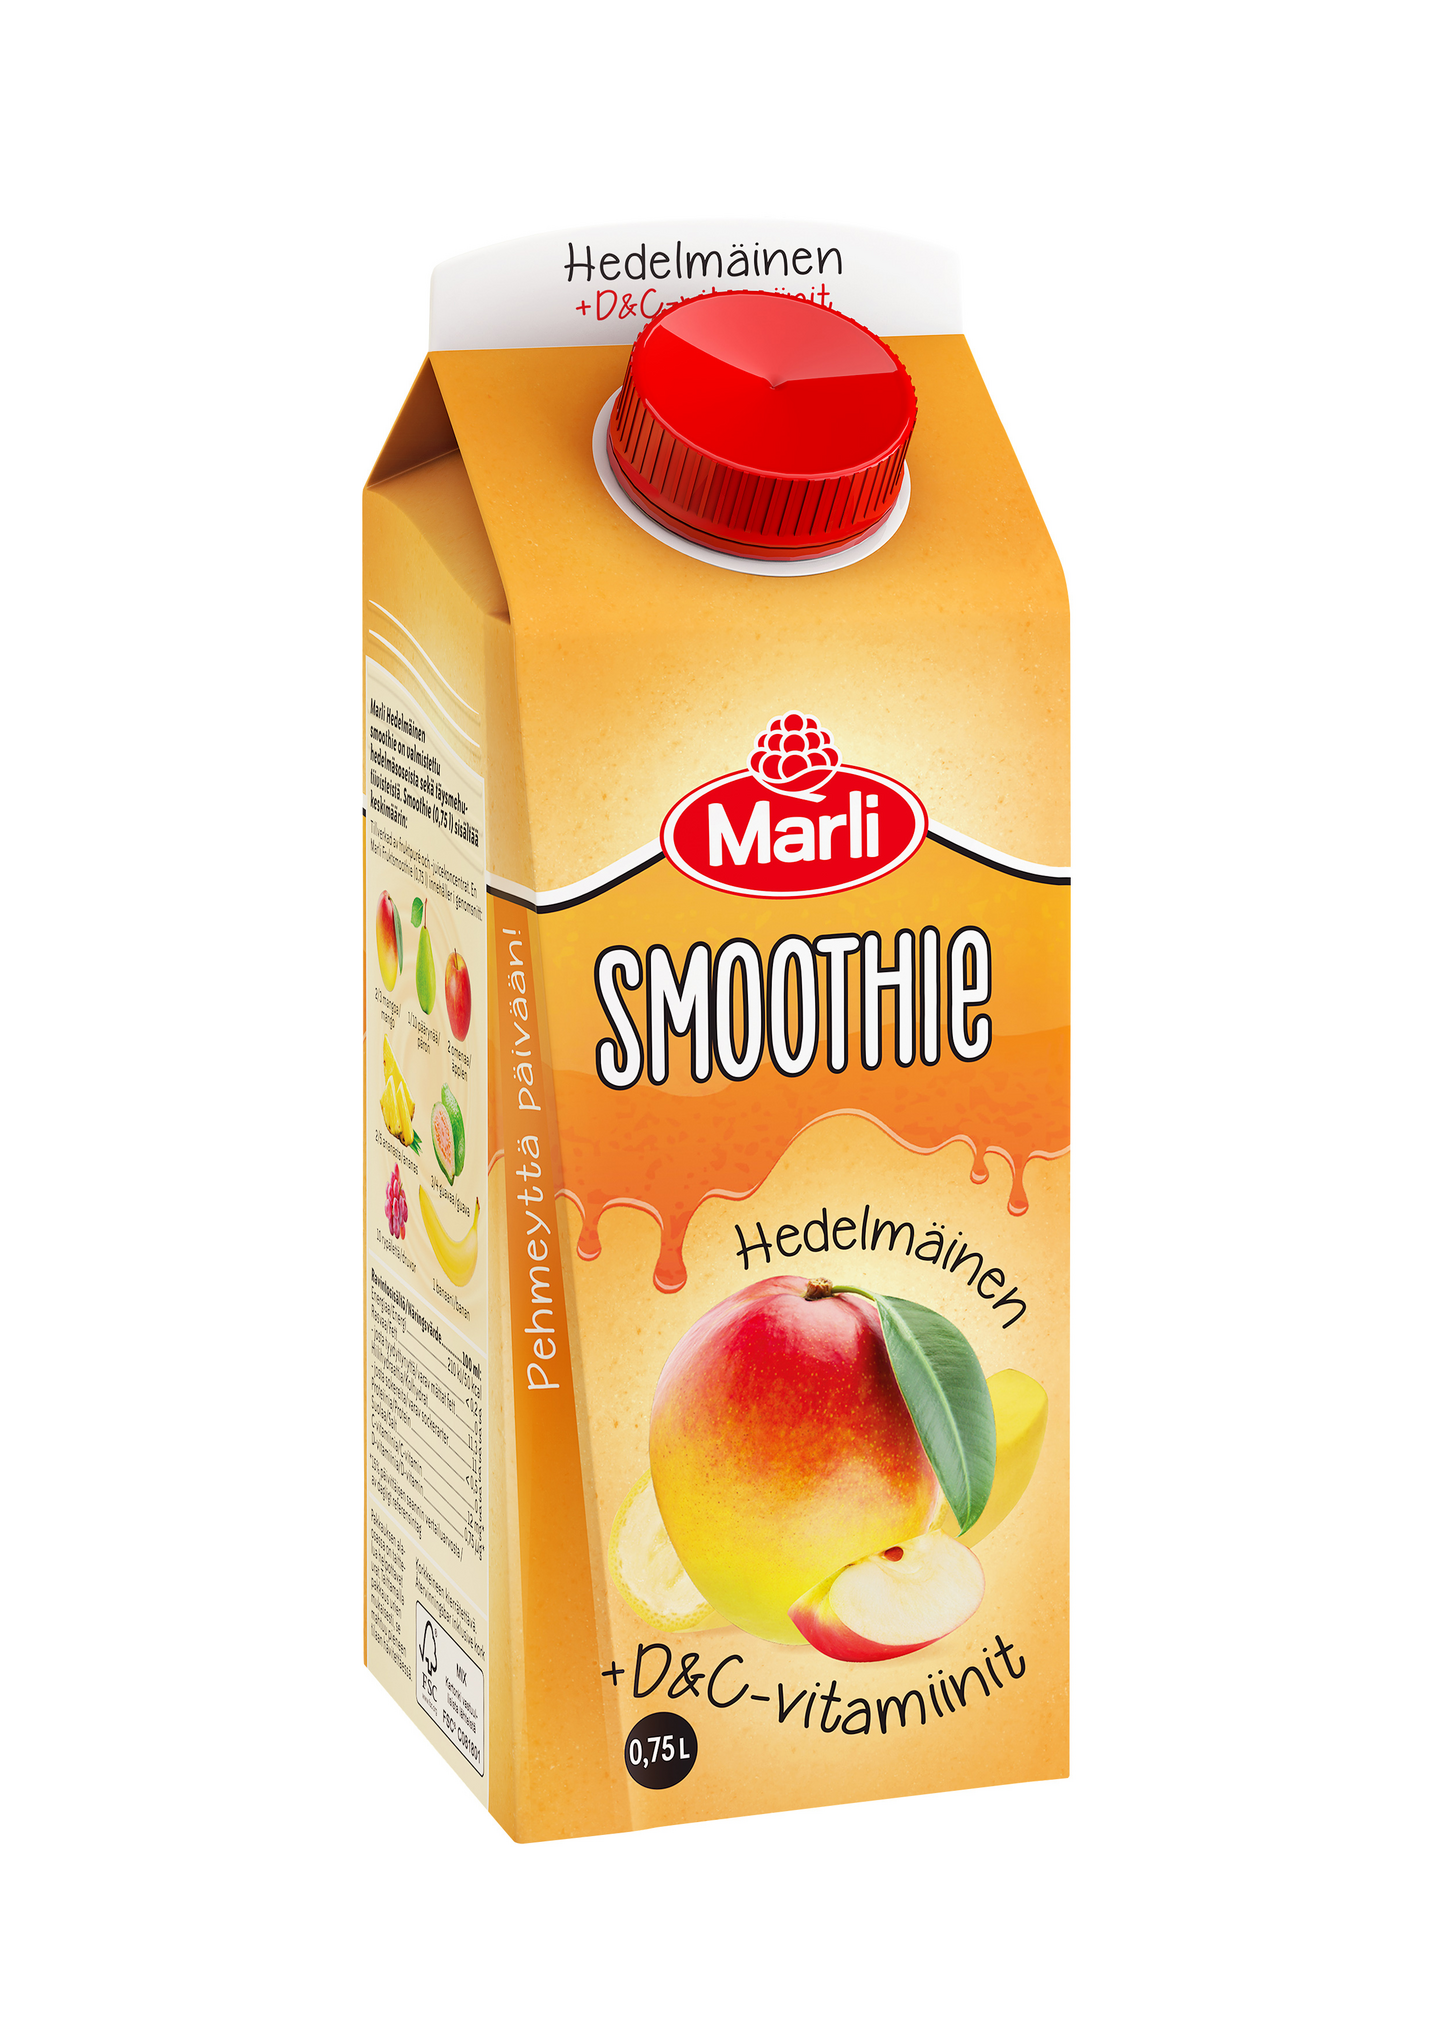 Marli Hedelmäinen smoothie + D&C -vitamiinit 0,75l | K-Ruoka Verkkokauppa